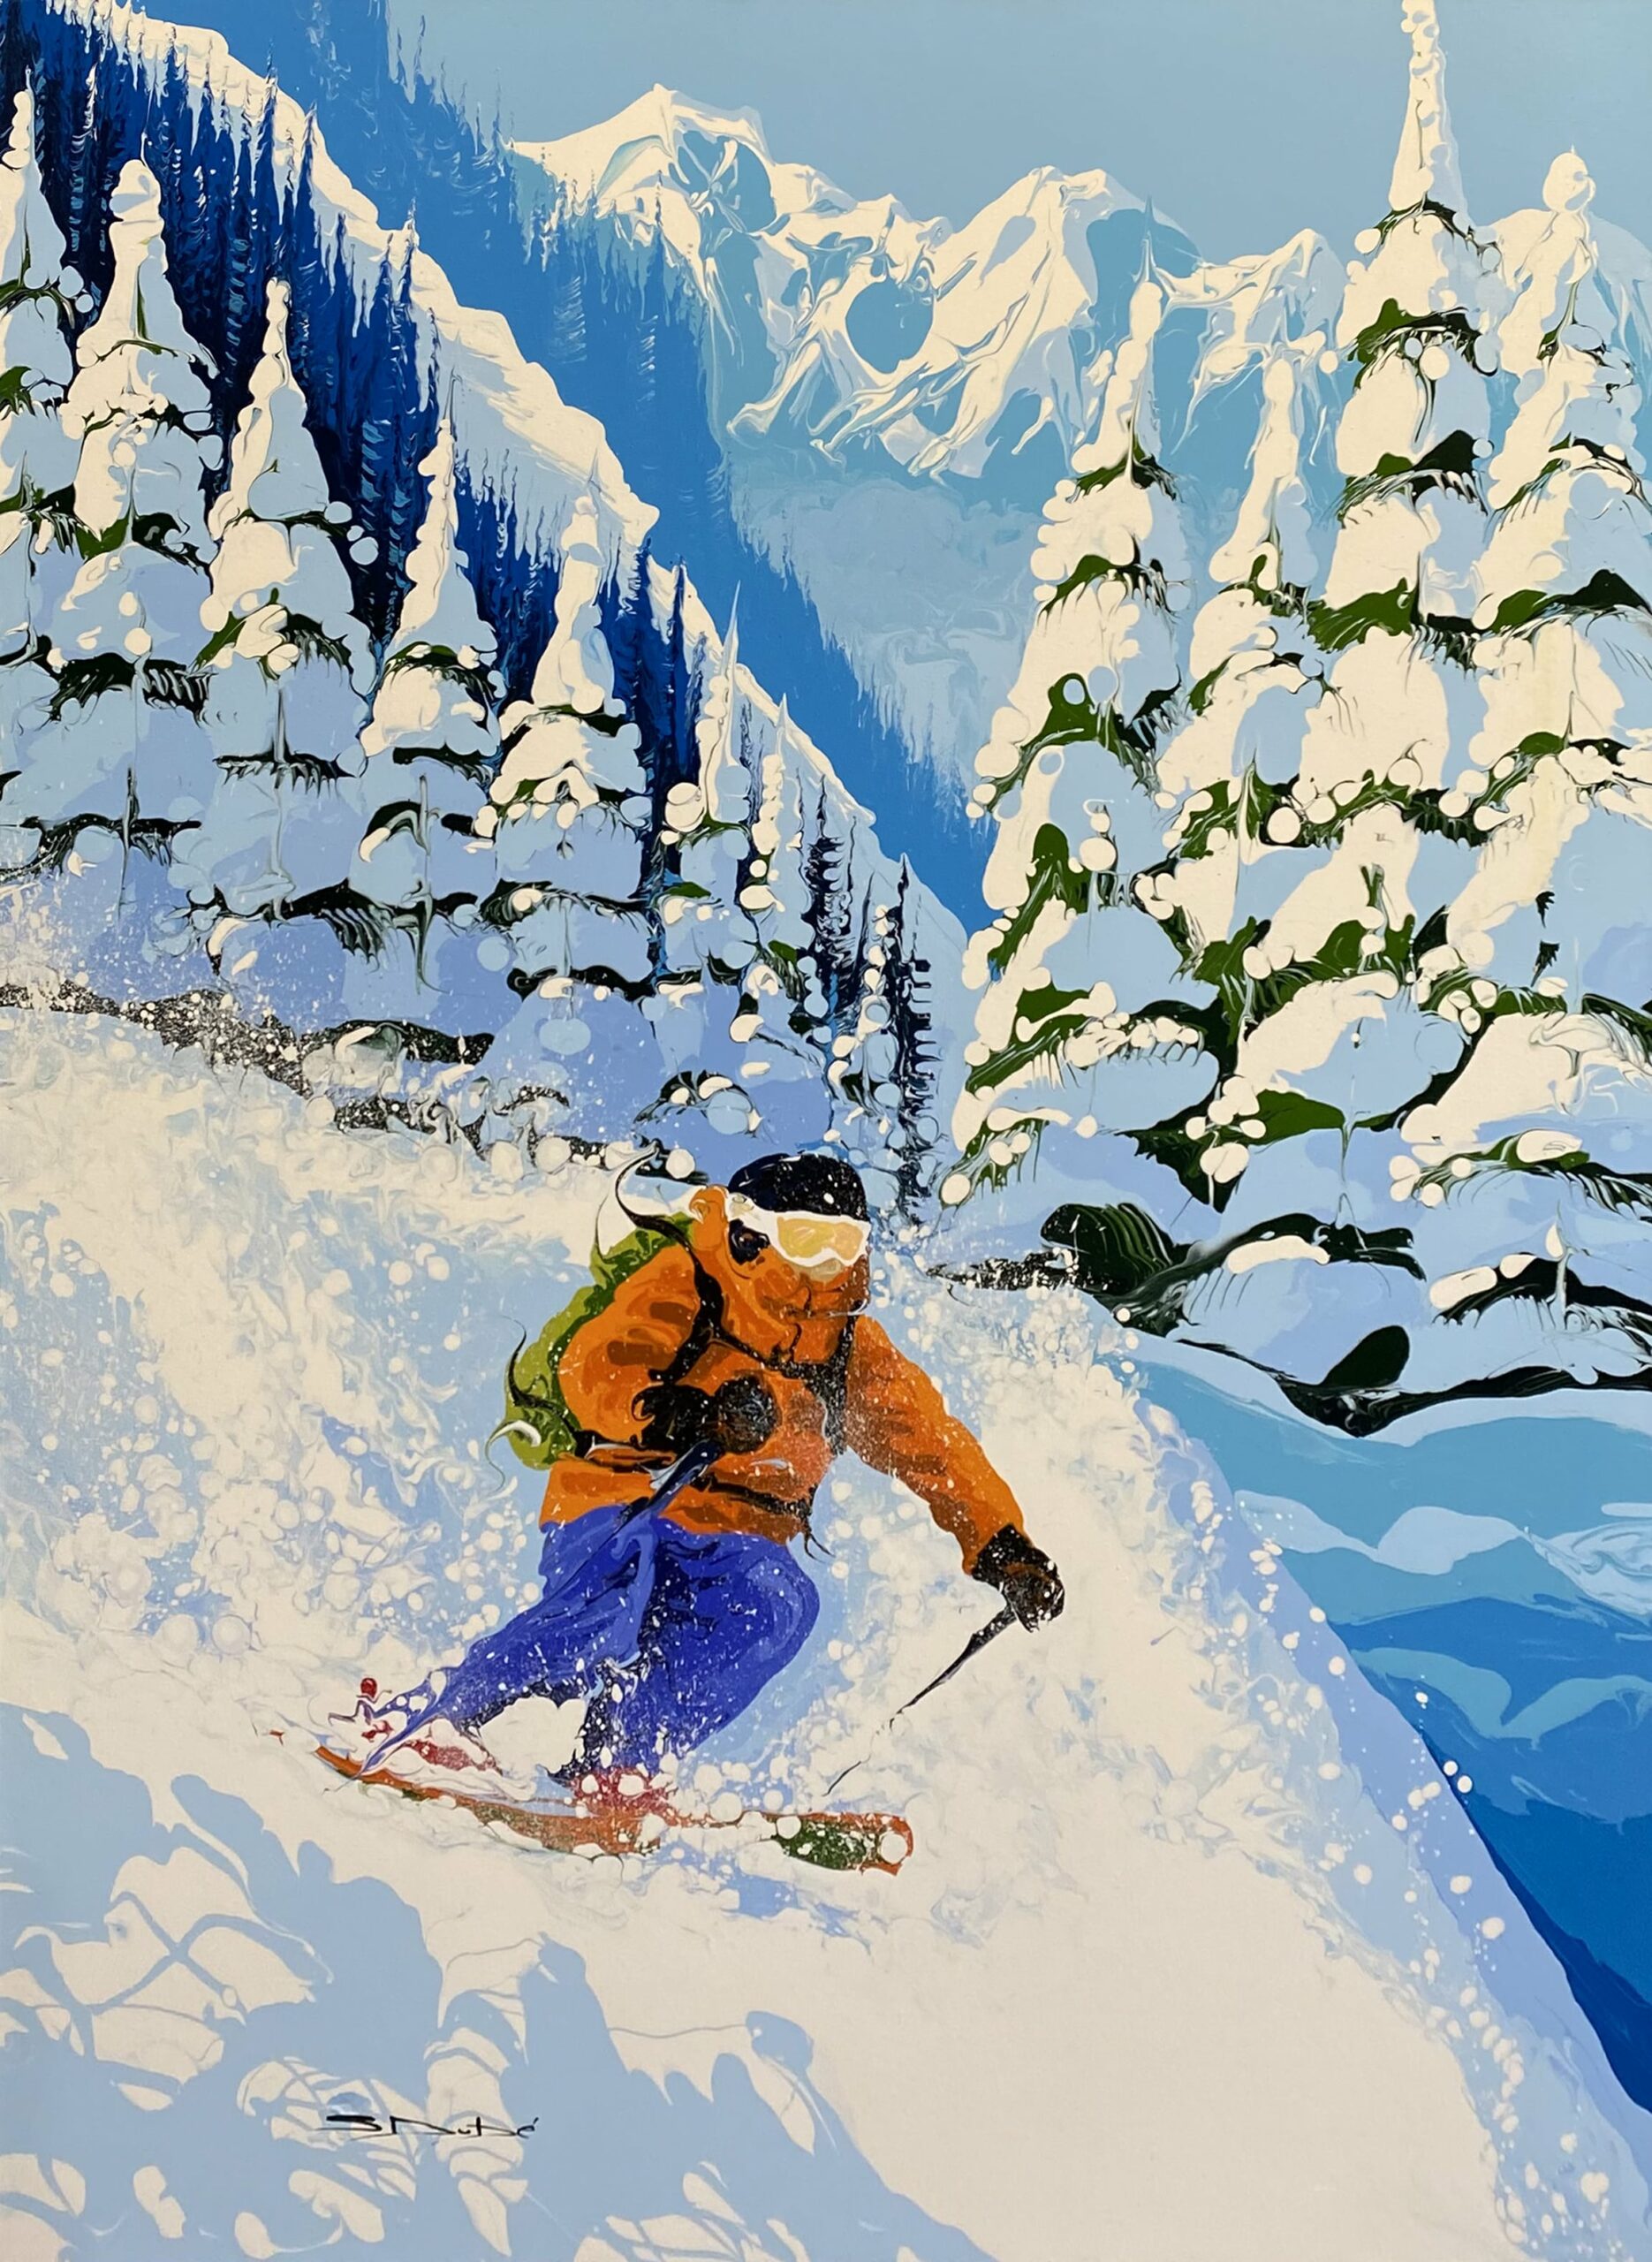 Tableau représentant un skieur descendant une montagne